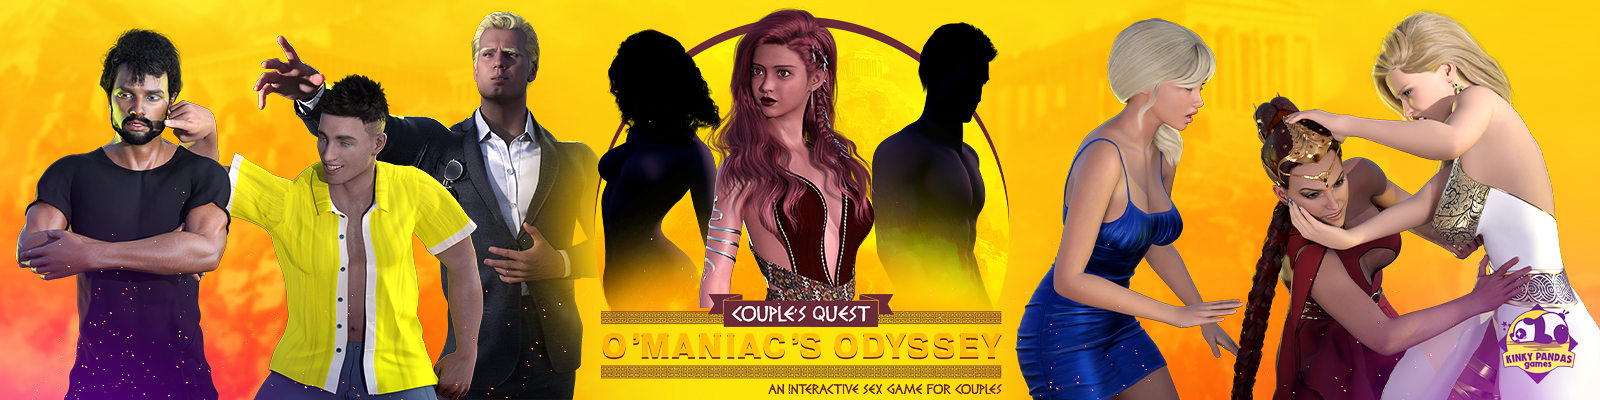 Couple's Quest: O'Maniac's Odyssey